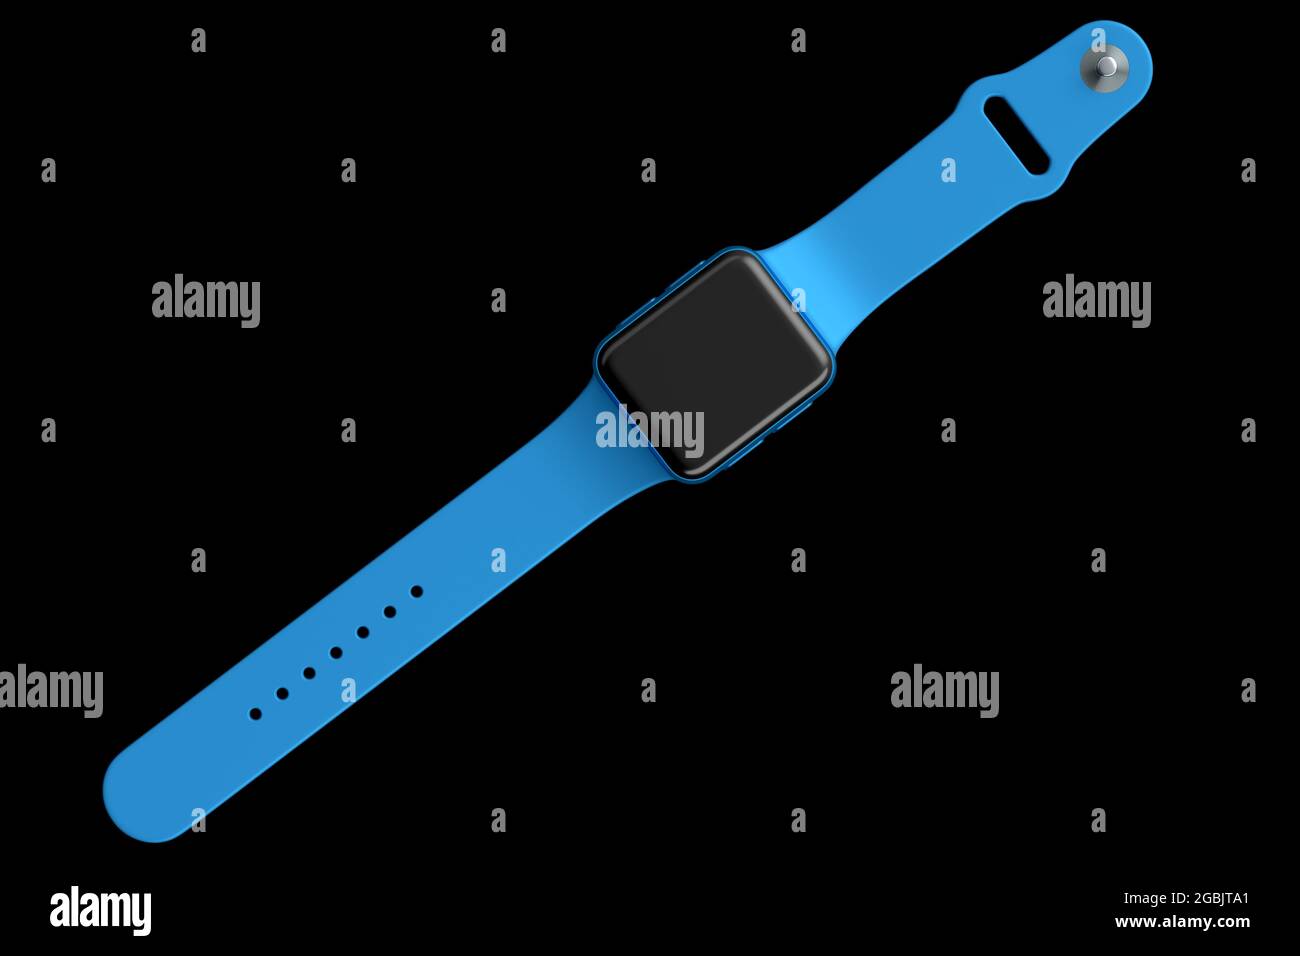 Reloj inteligente de acero inoxidable con correa de cuero azul aislada sobre fondo negro. 3D Concepto de renderizado de dispositivo portátil de salud y fitness tracker Foto de stock